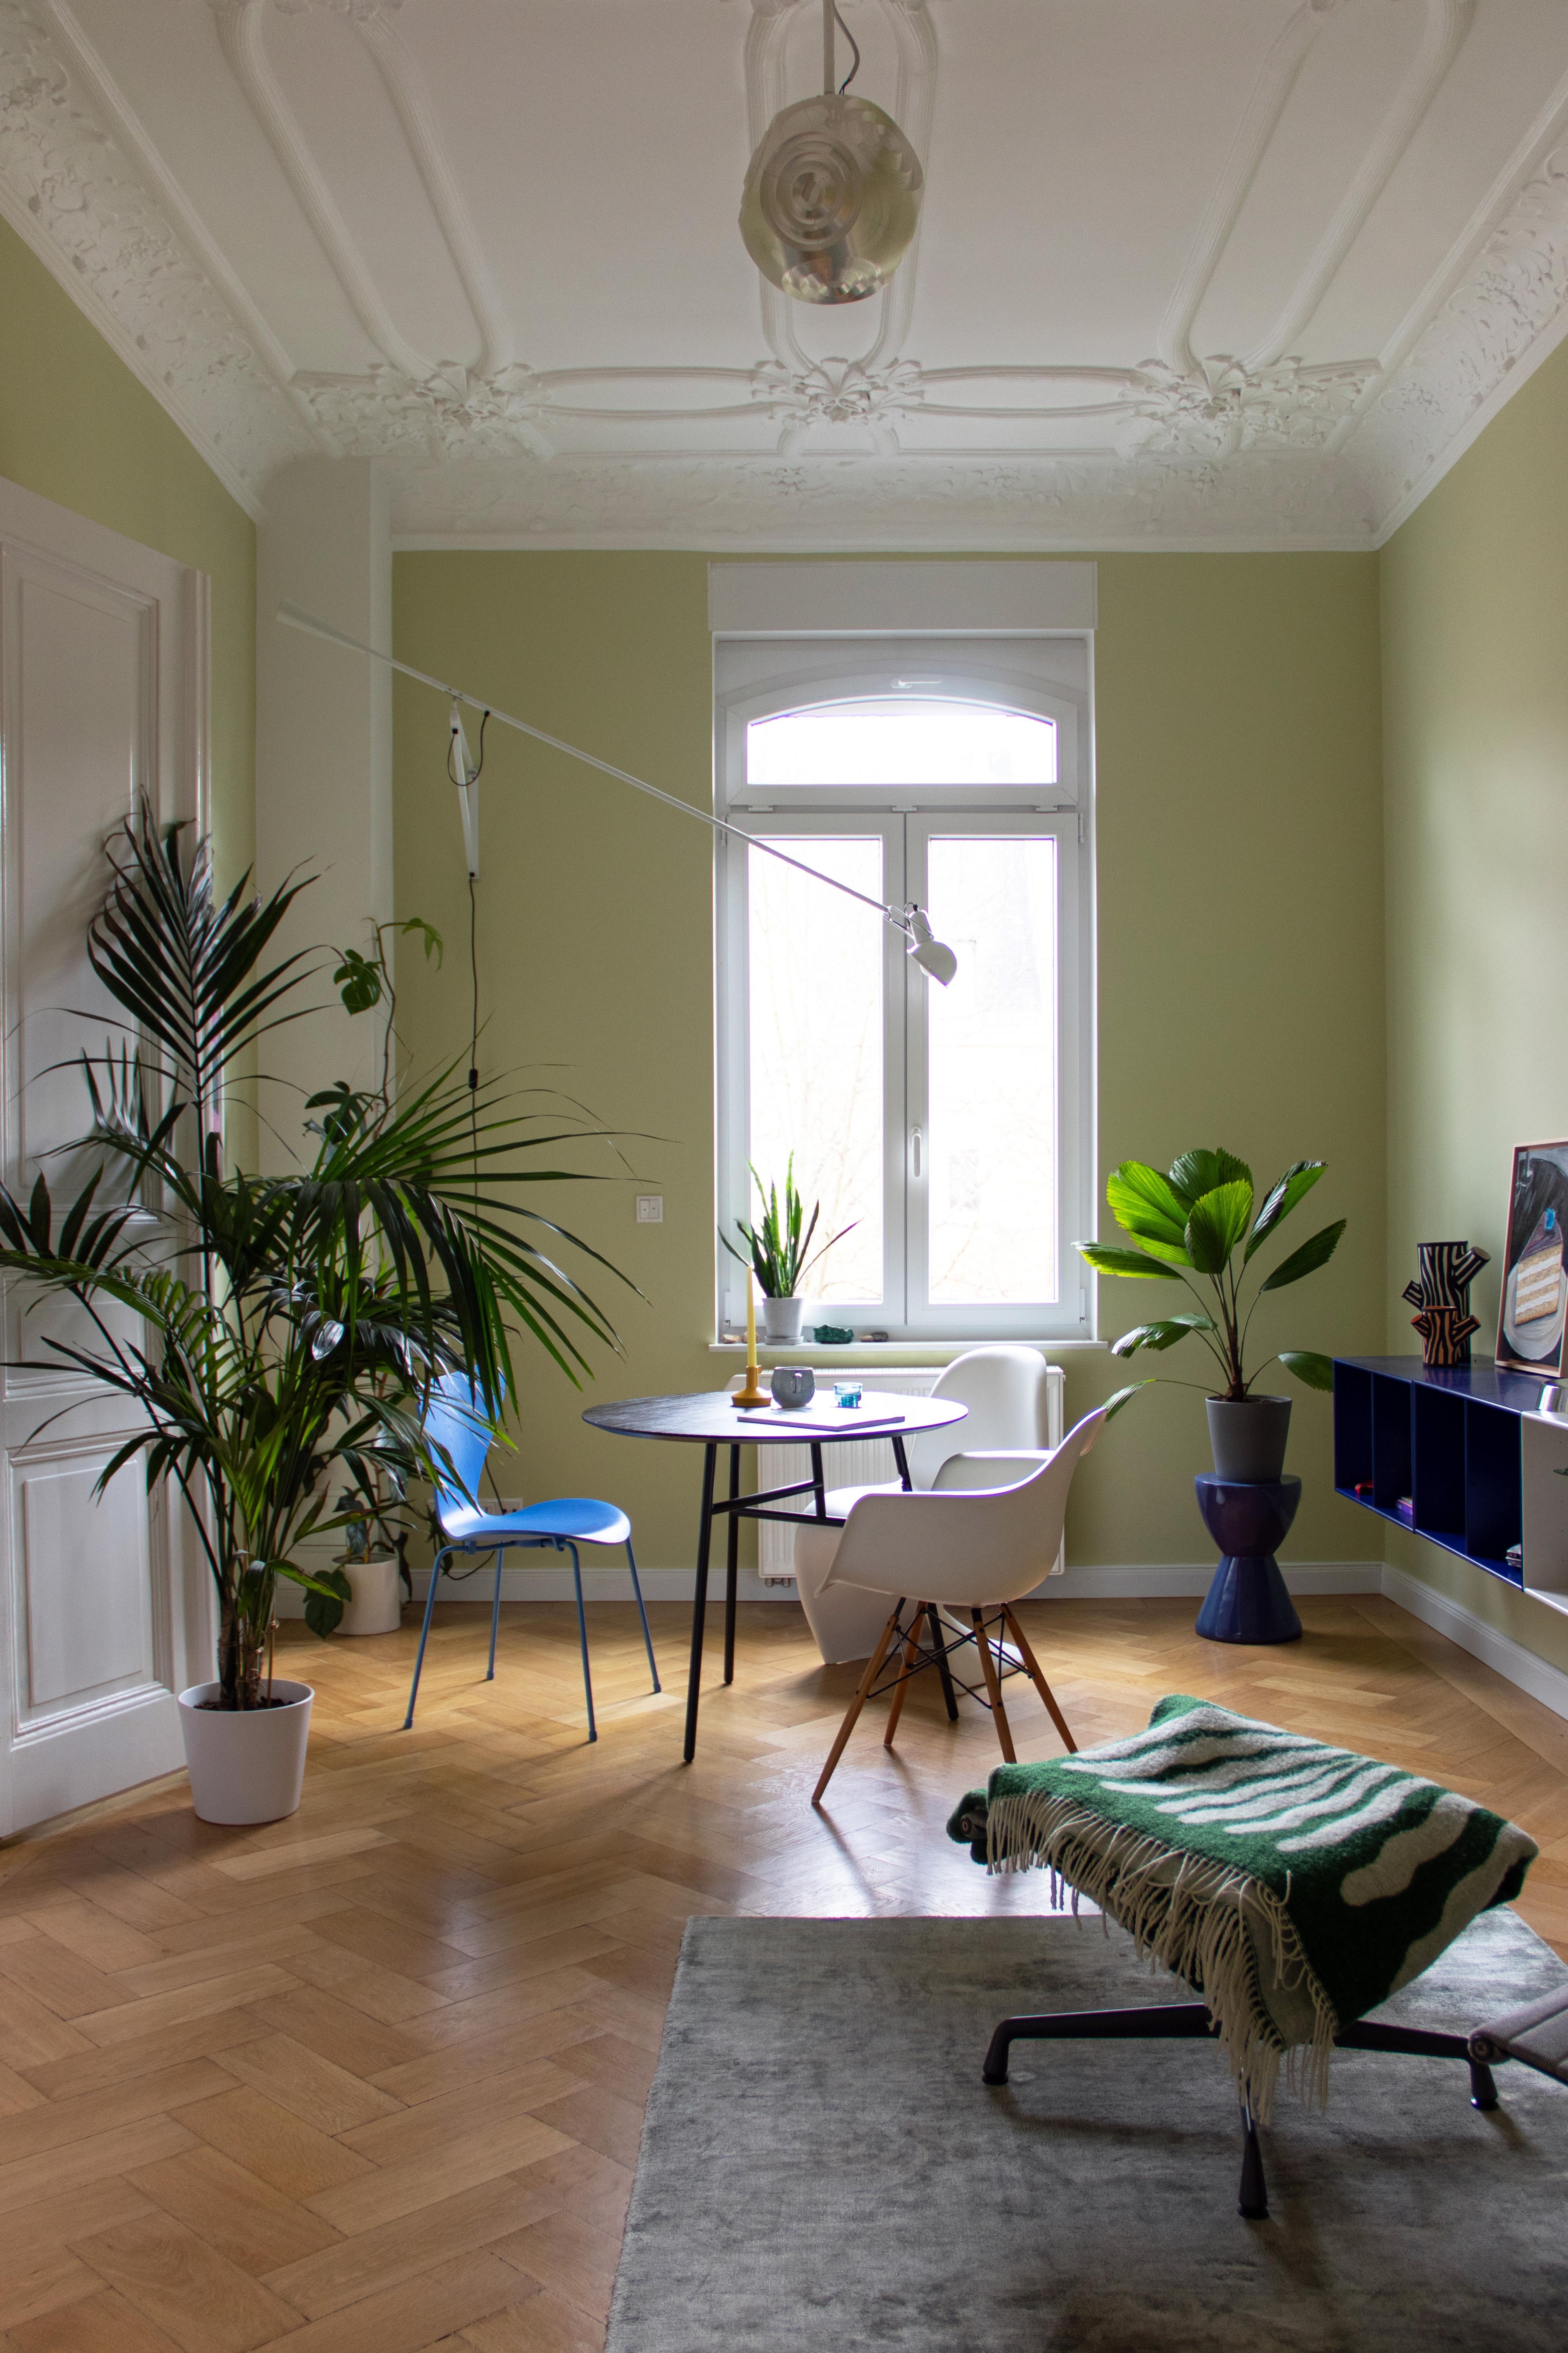 #Altbau #Stuck #Grün #Pflanze #Palme #Esszimmer #Esstisch #Farbe #Couchliebt #Couchstyle